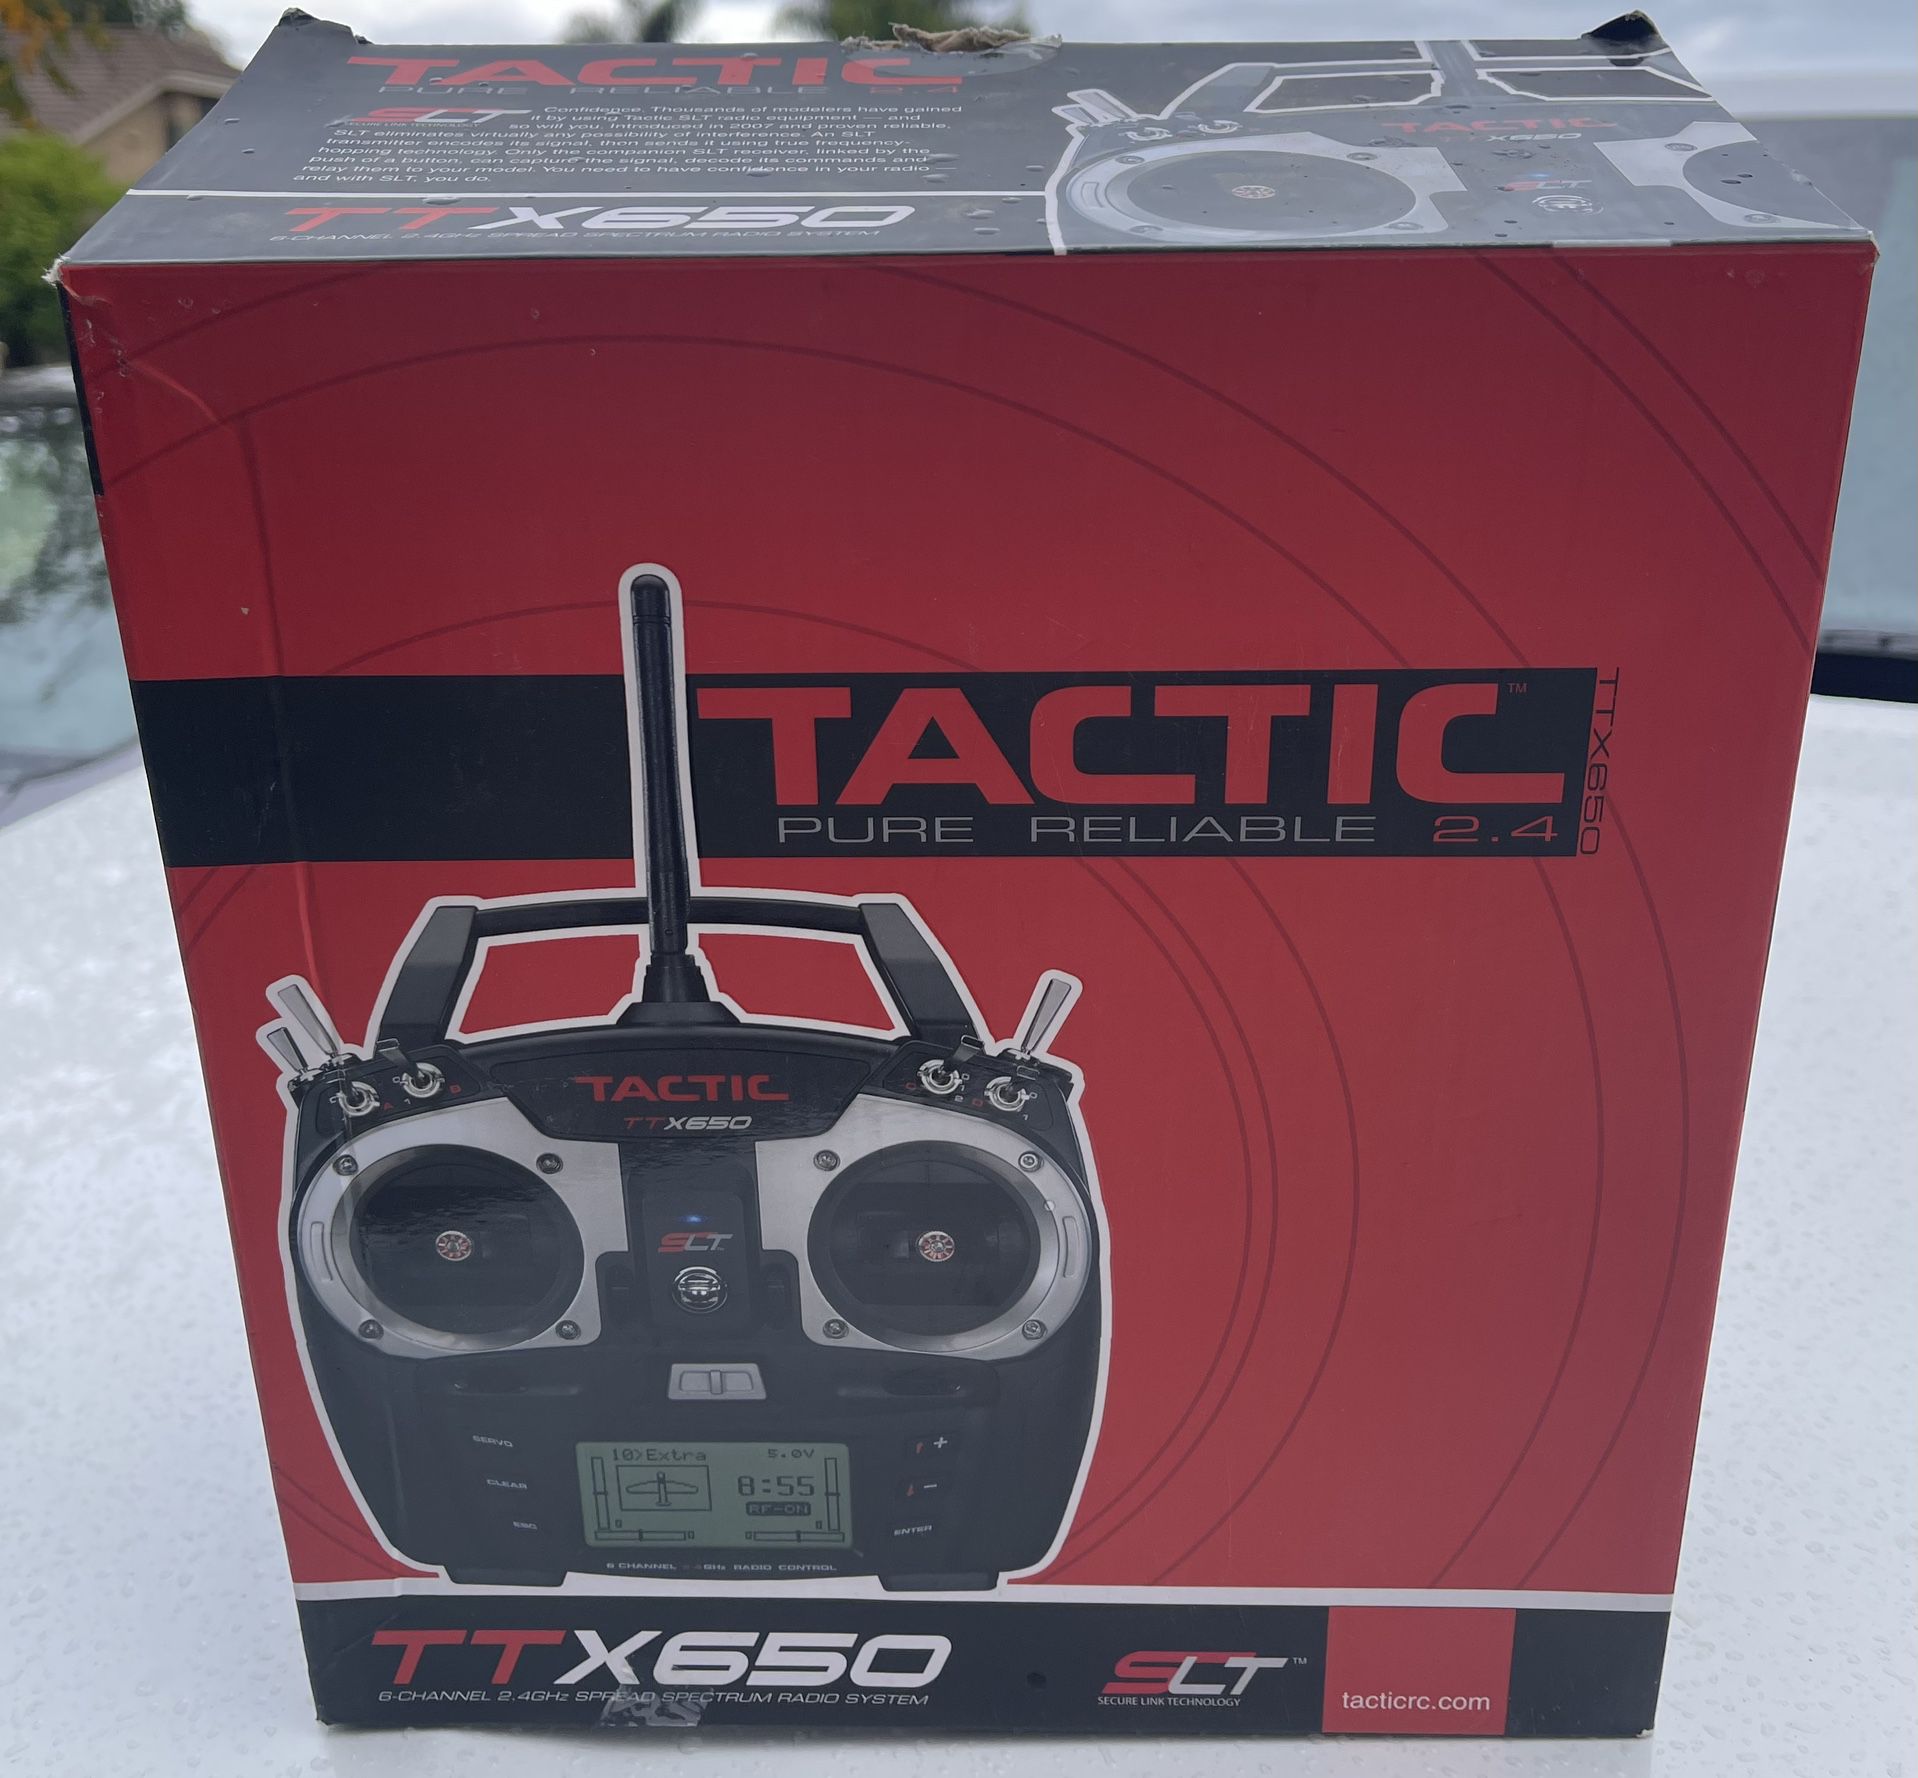 Tactic TTX650 2.4 GHZ SLT Transmitter